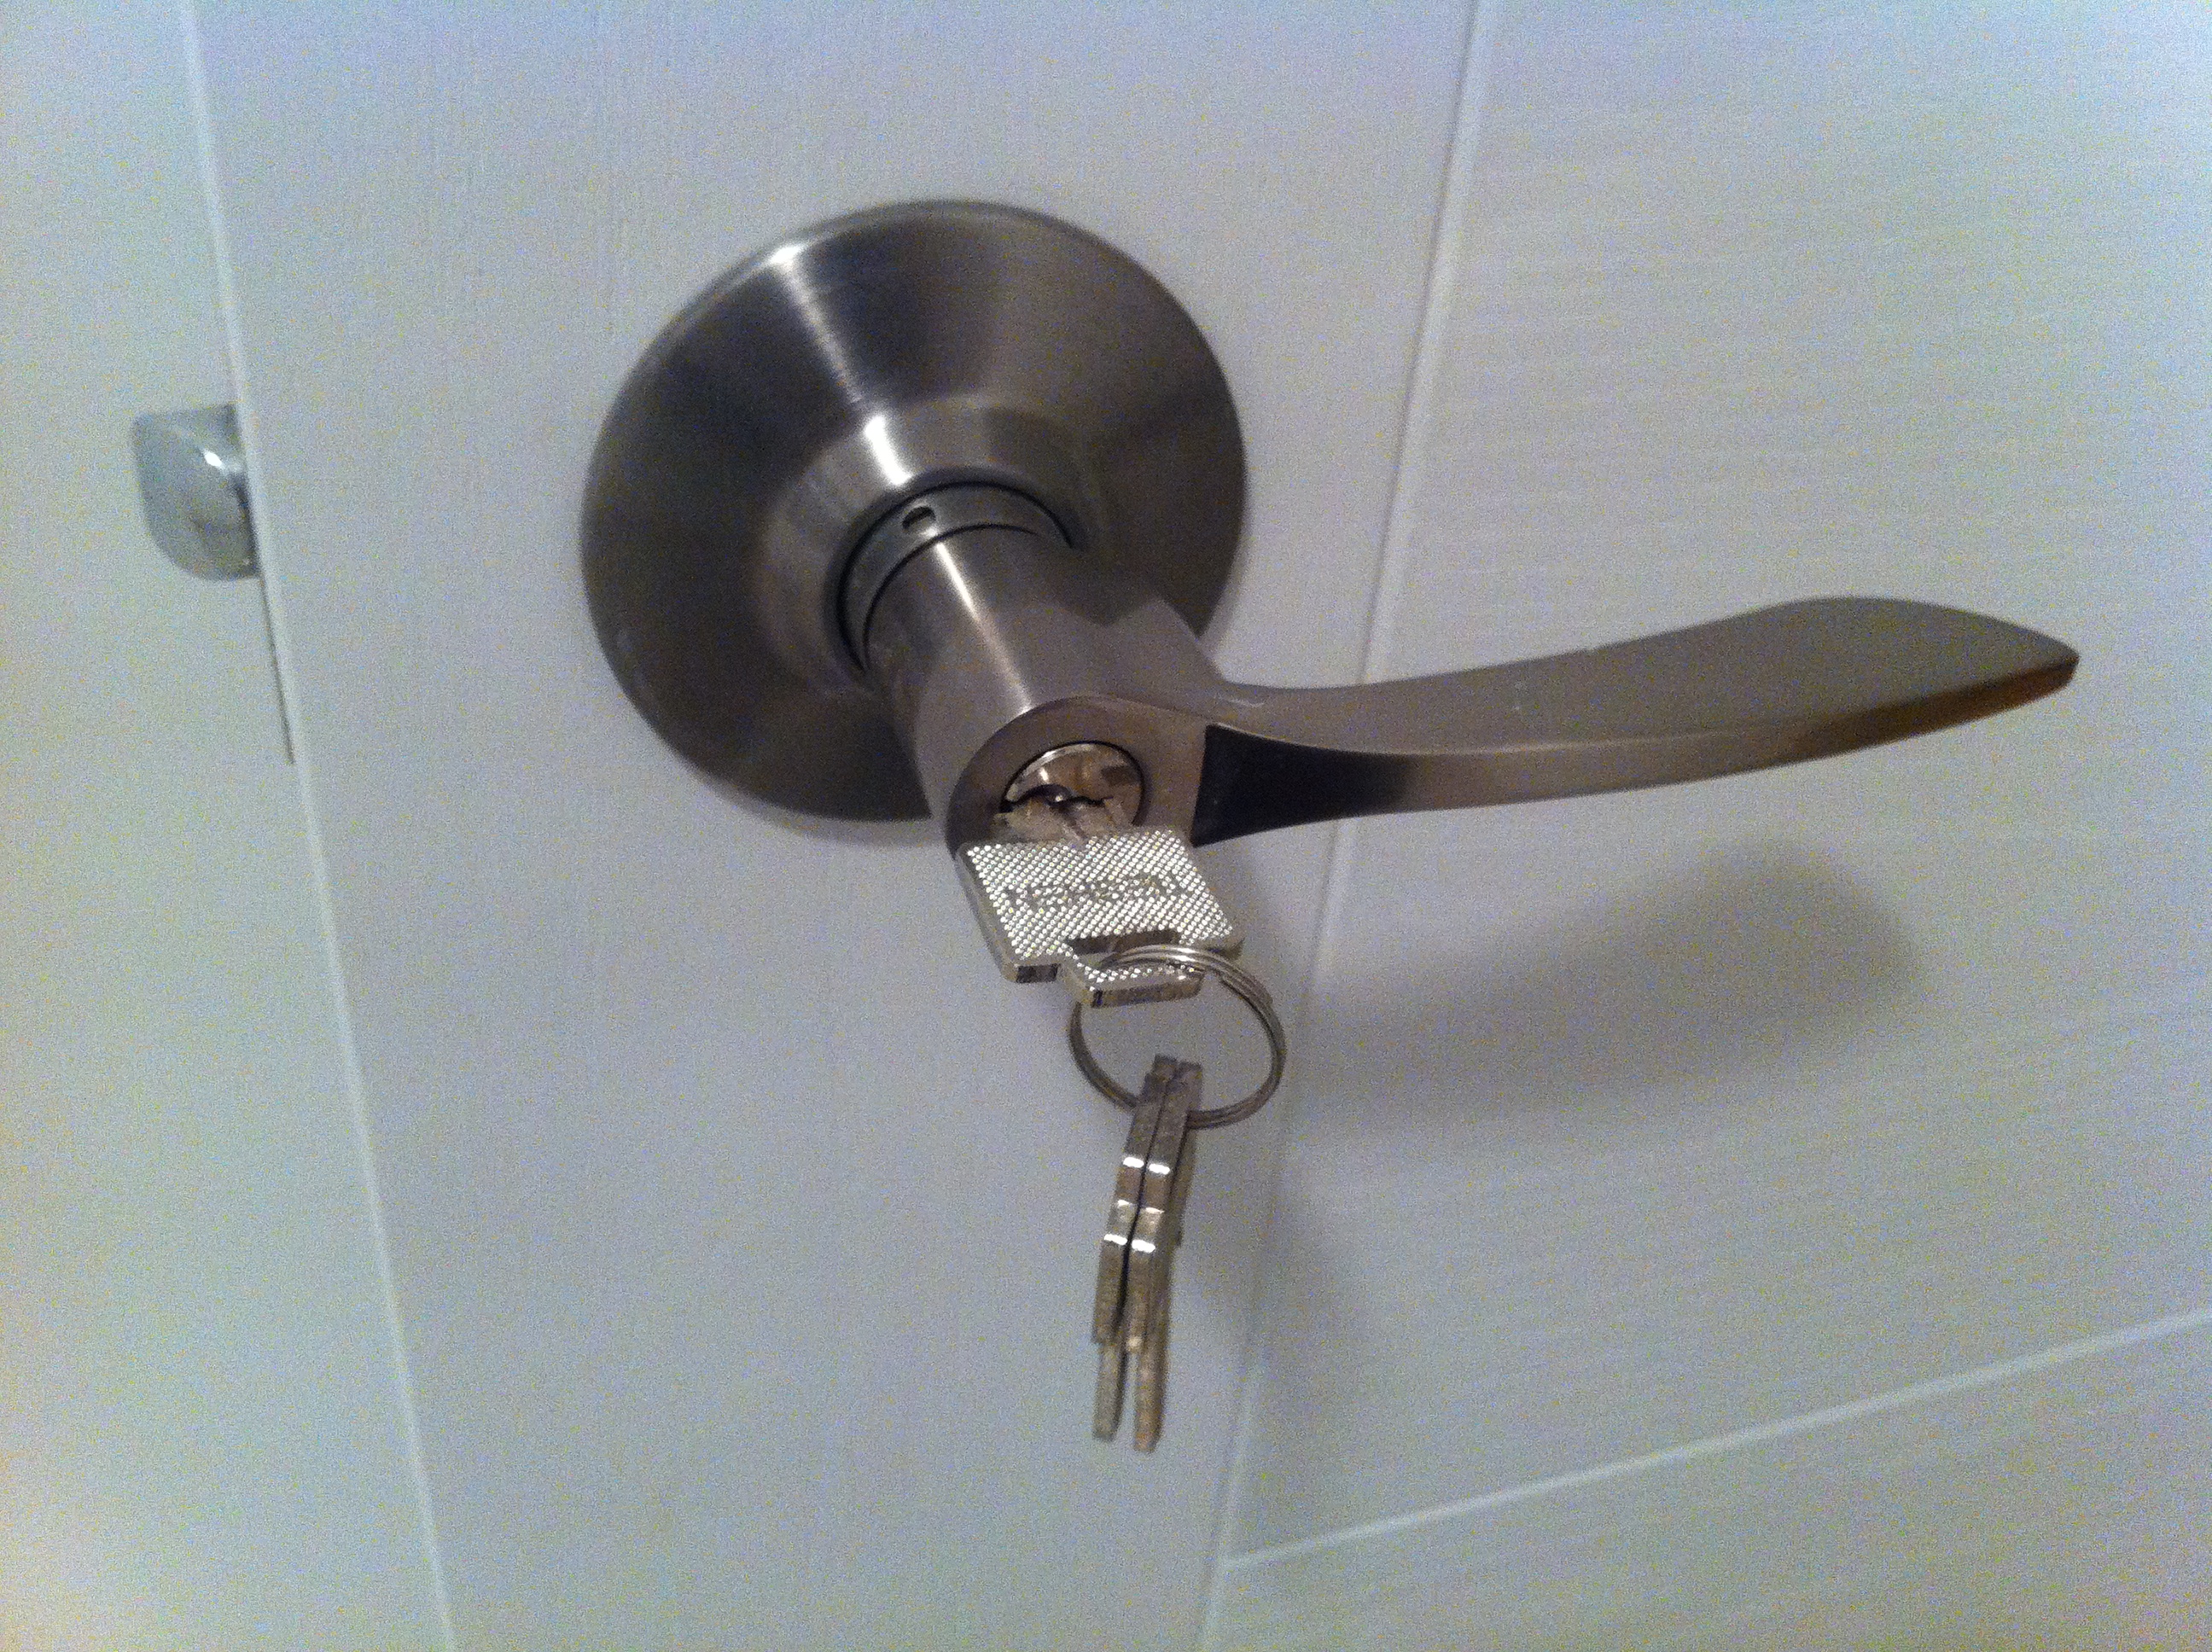 key stuck in door knob photo - 18